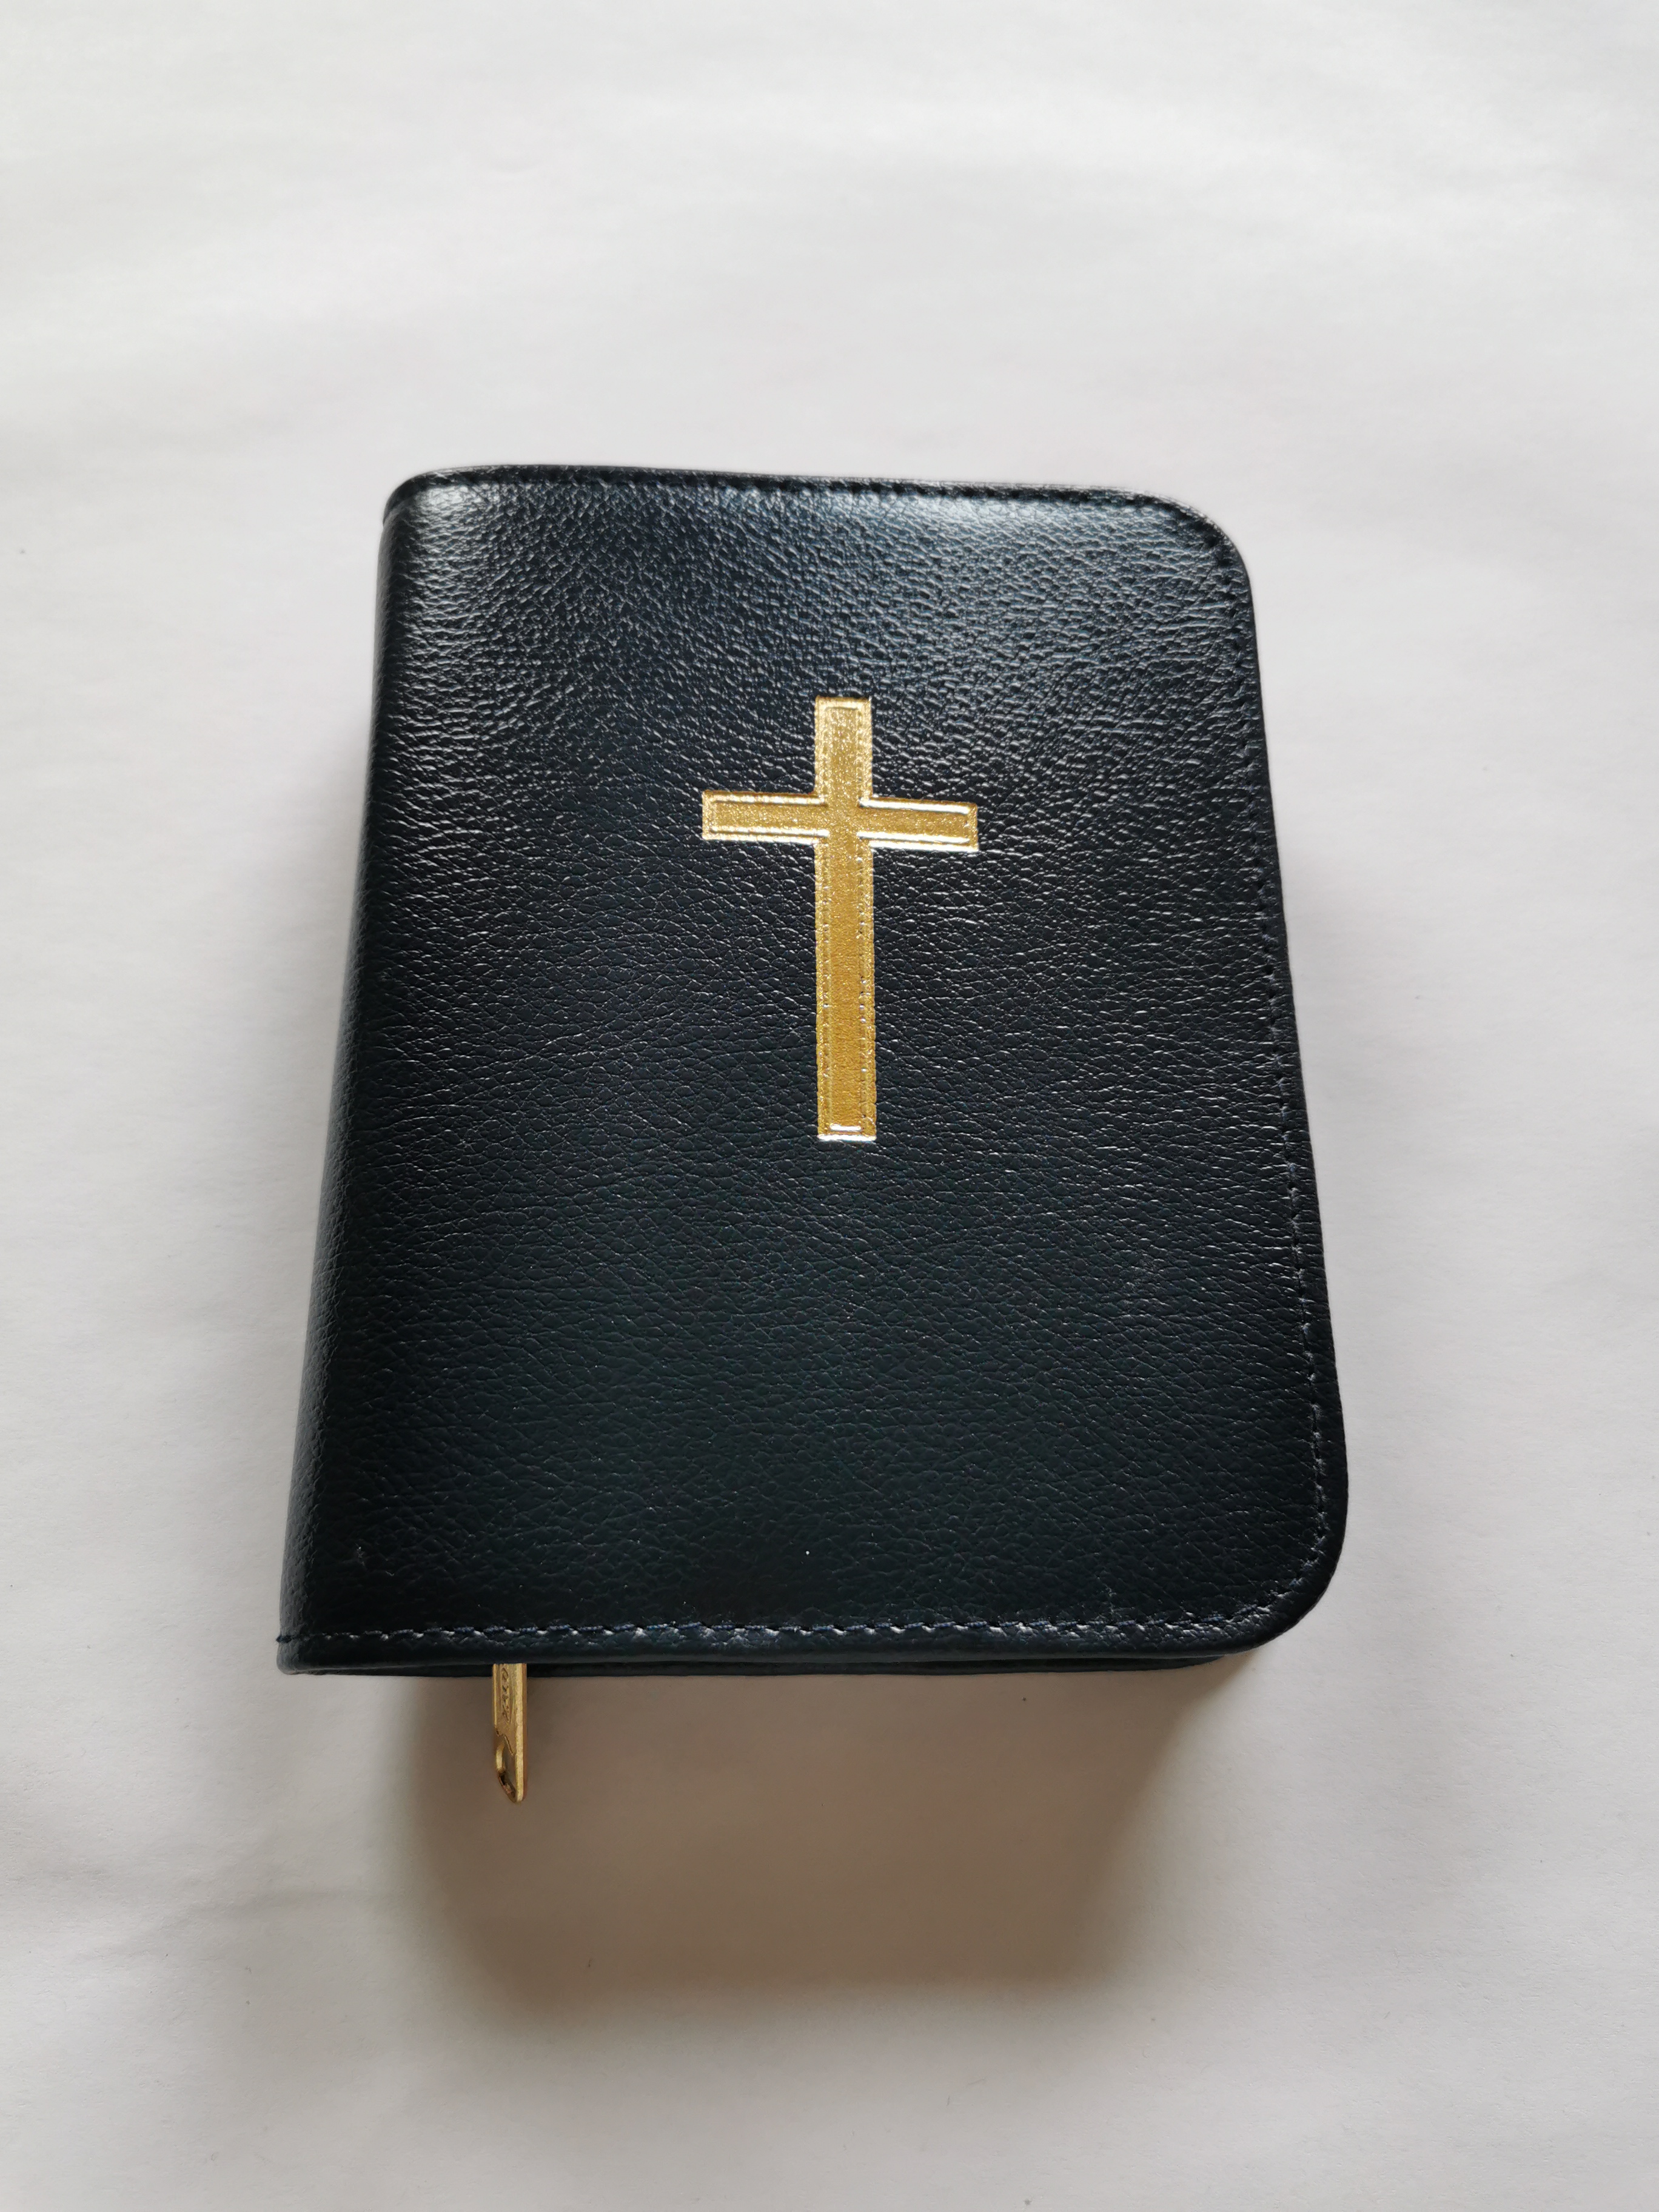 Buchhülle für: Die Bibel -  Einheitsübersetzung- Taschenausgabe/Taschenformat Rindleder-Smart blau mit Kreuz 906